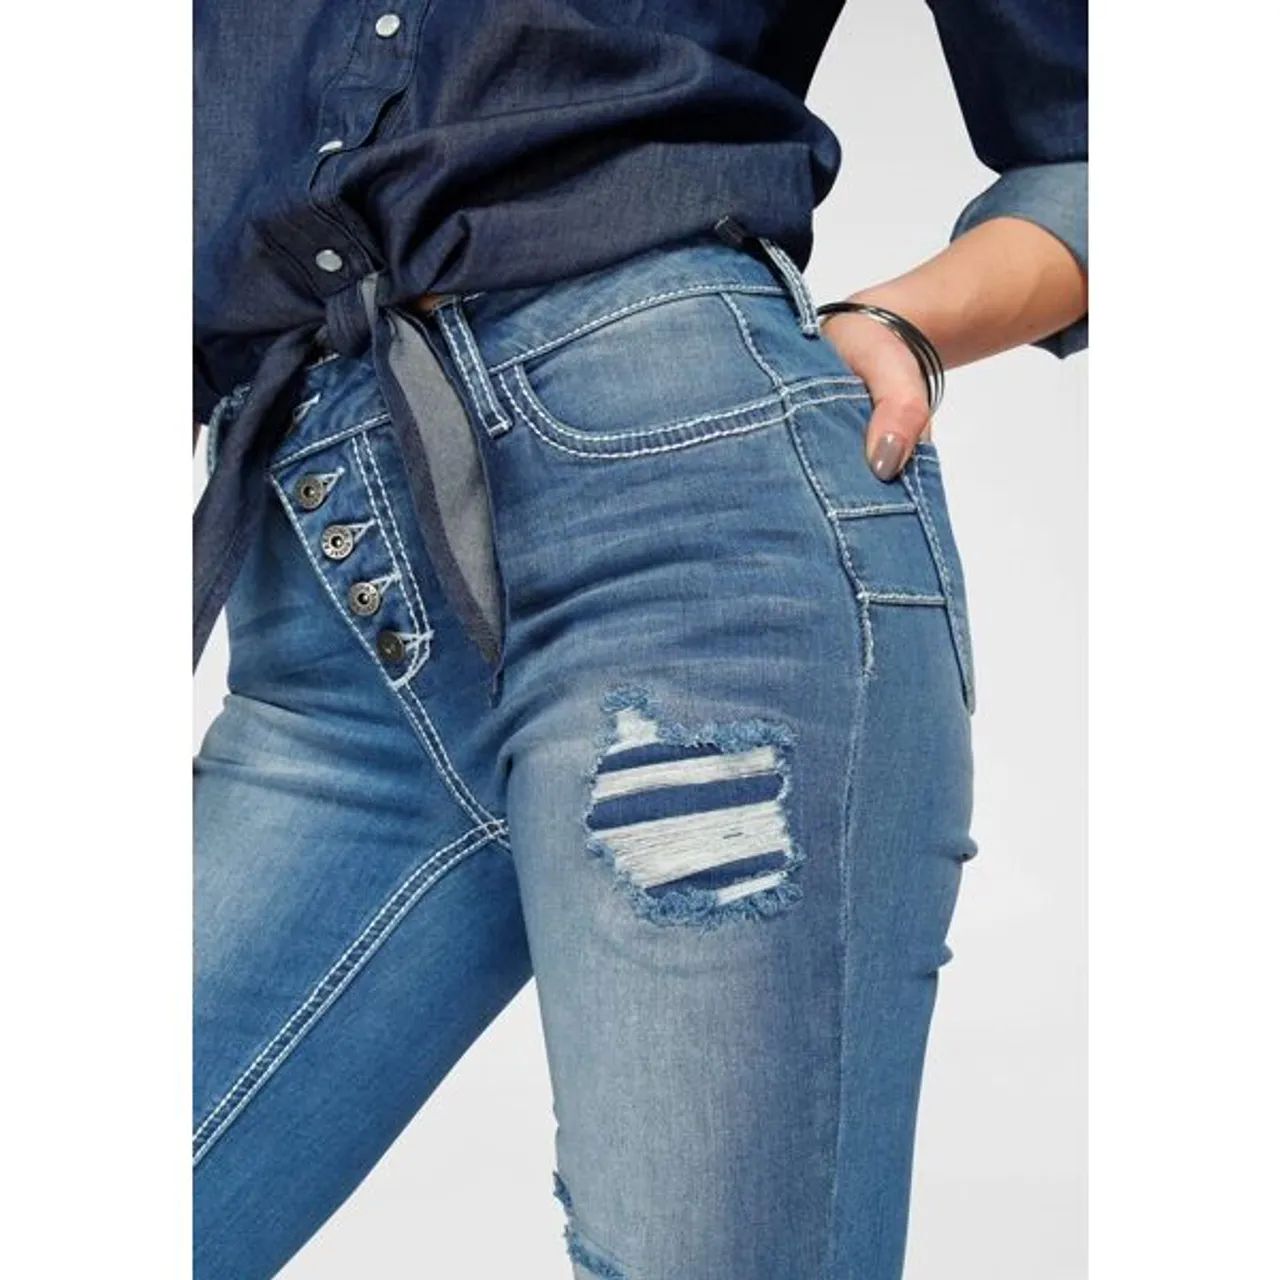 Slim-fit-Jeans ARIZONA "mit sichtbarer, schräger Knopfleiste" Gr. 38, N-Gr, blau (mid, blue, used) Damen Jeans Röhrenjeans